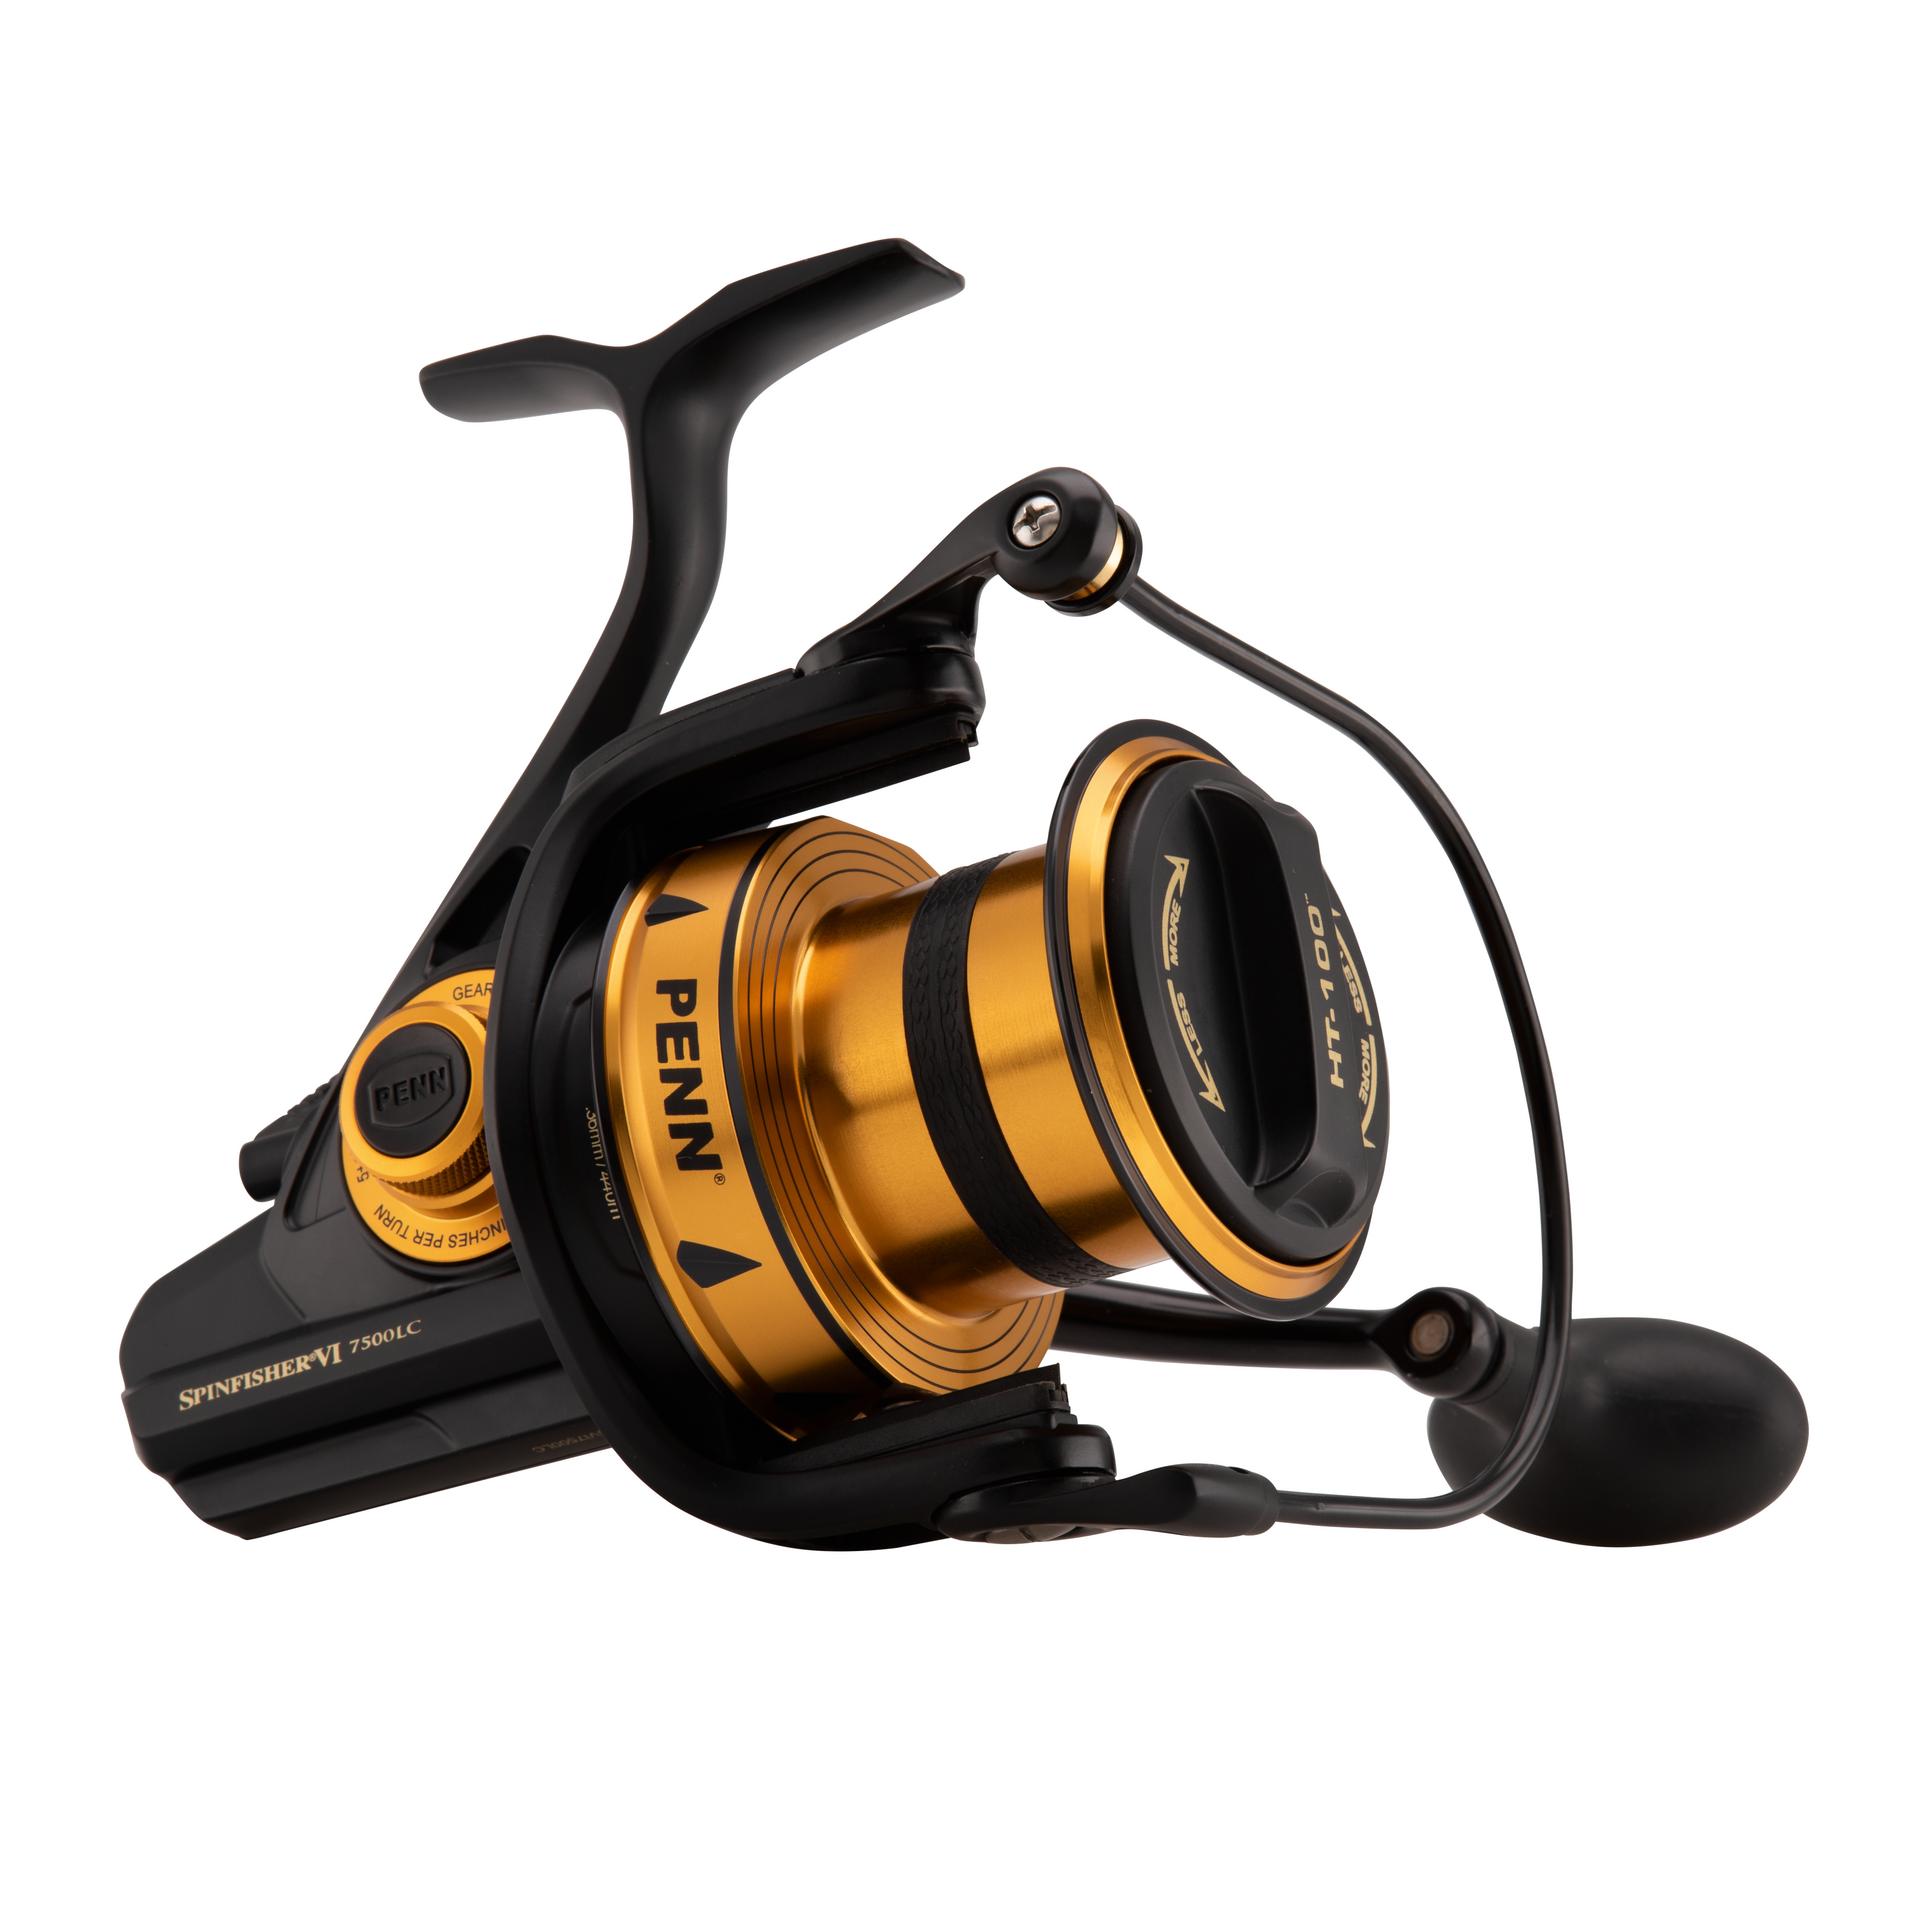 Penn Spinfisher VI Long Cast Spinning Fishing Reel´ Black Gold´ 7500